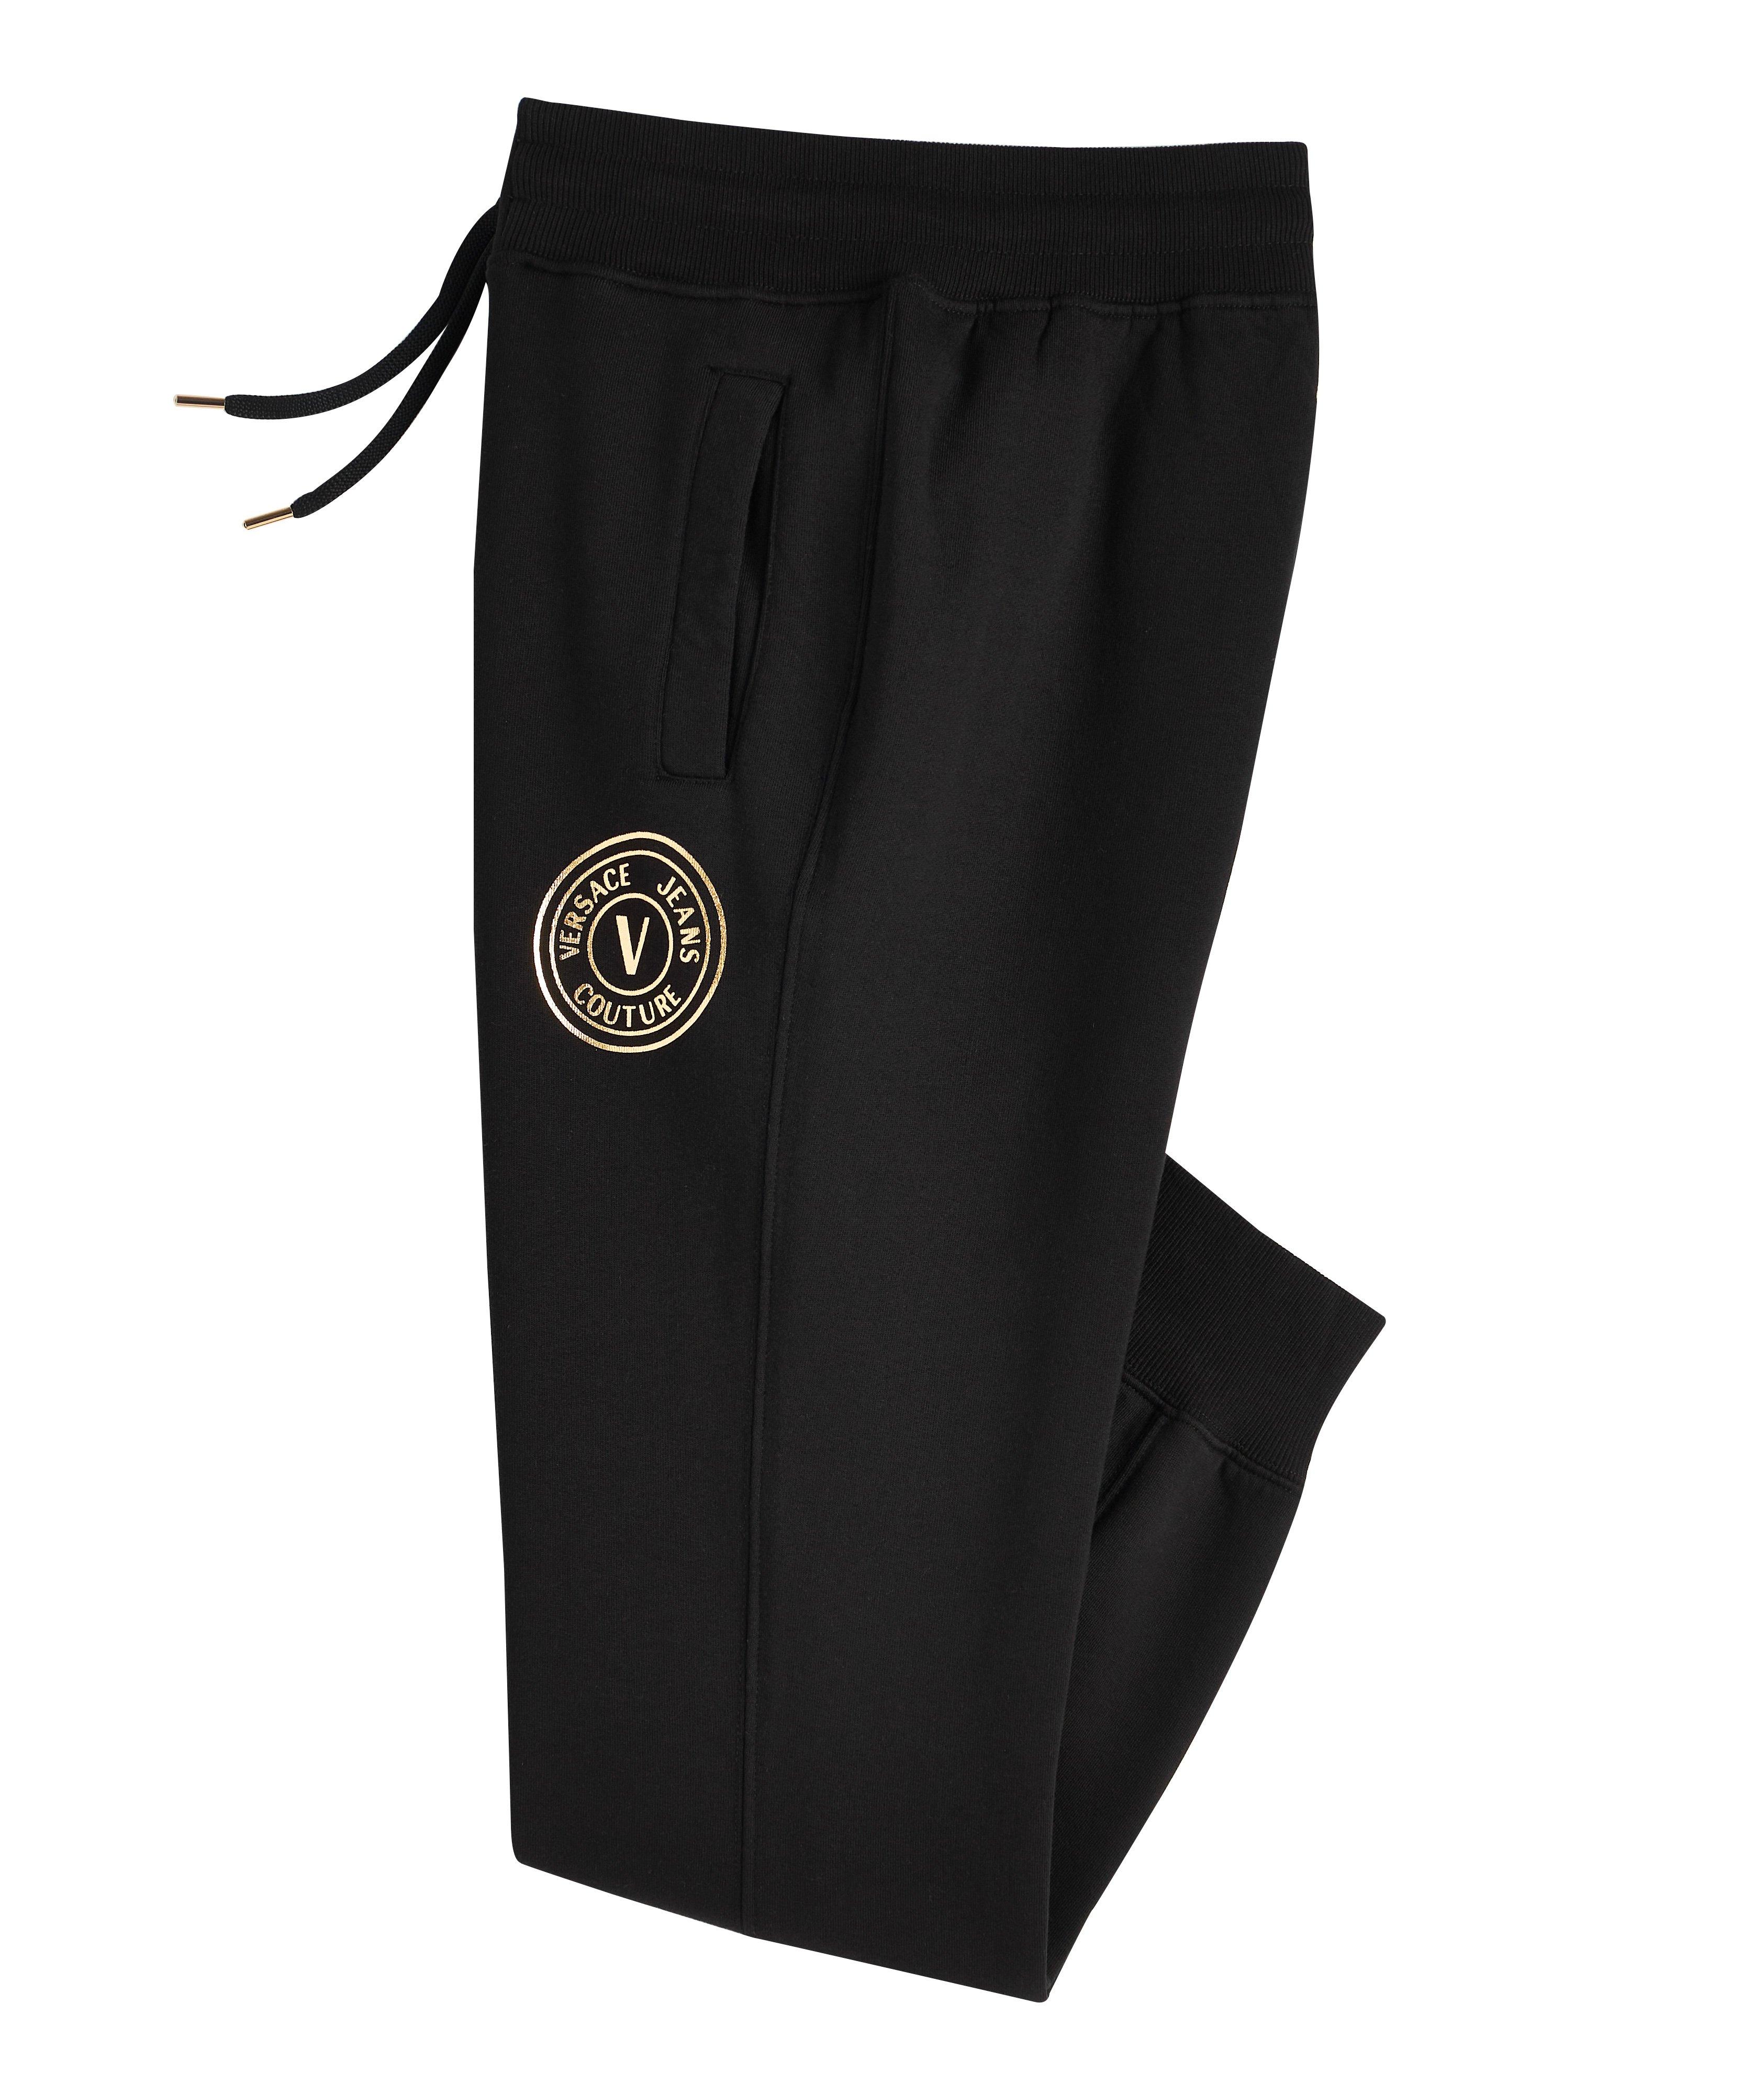 Pantalon sport en molleton de coton brossé avec emblème image 0